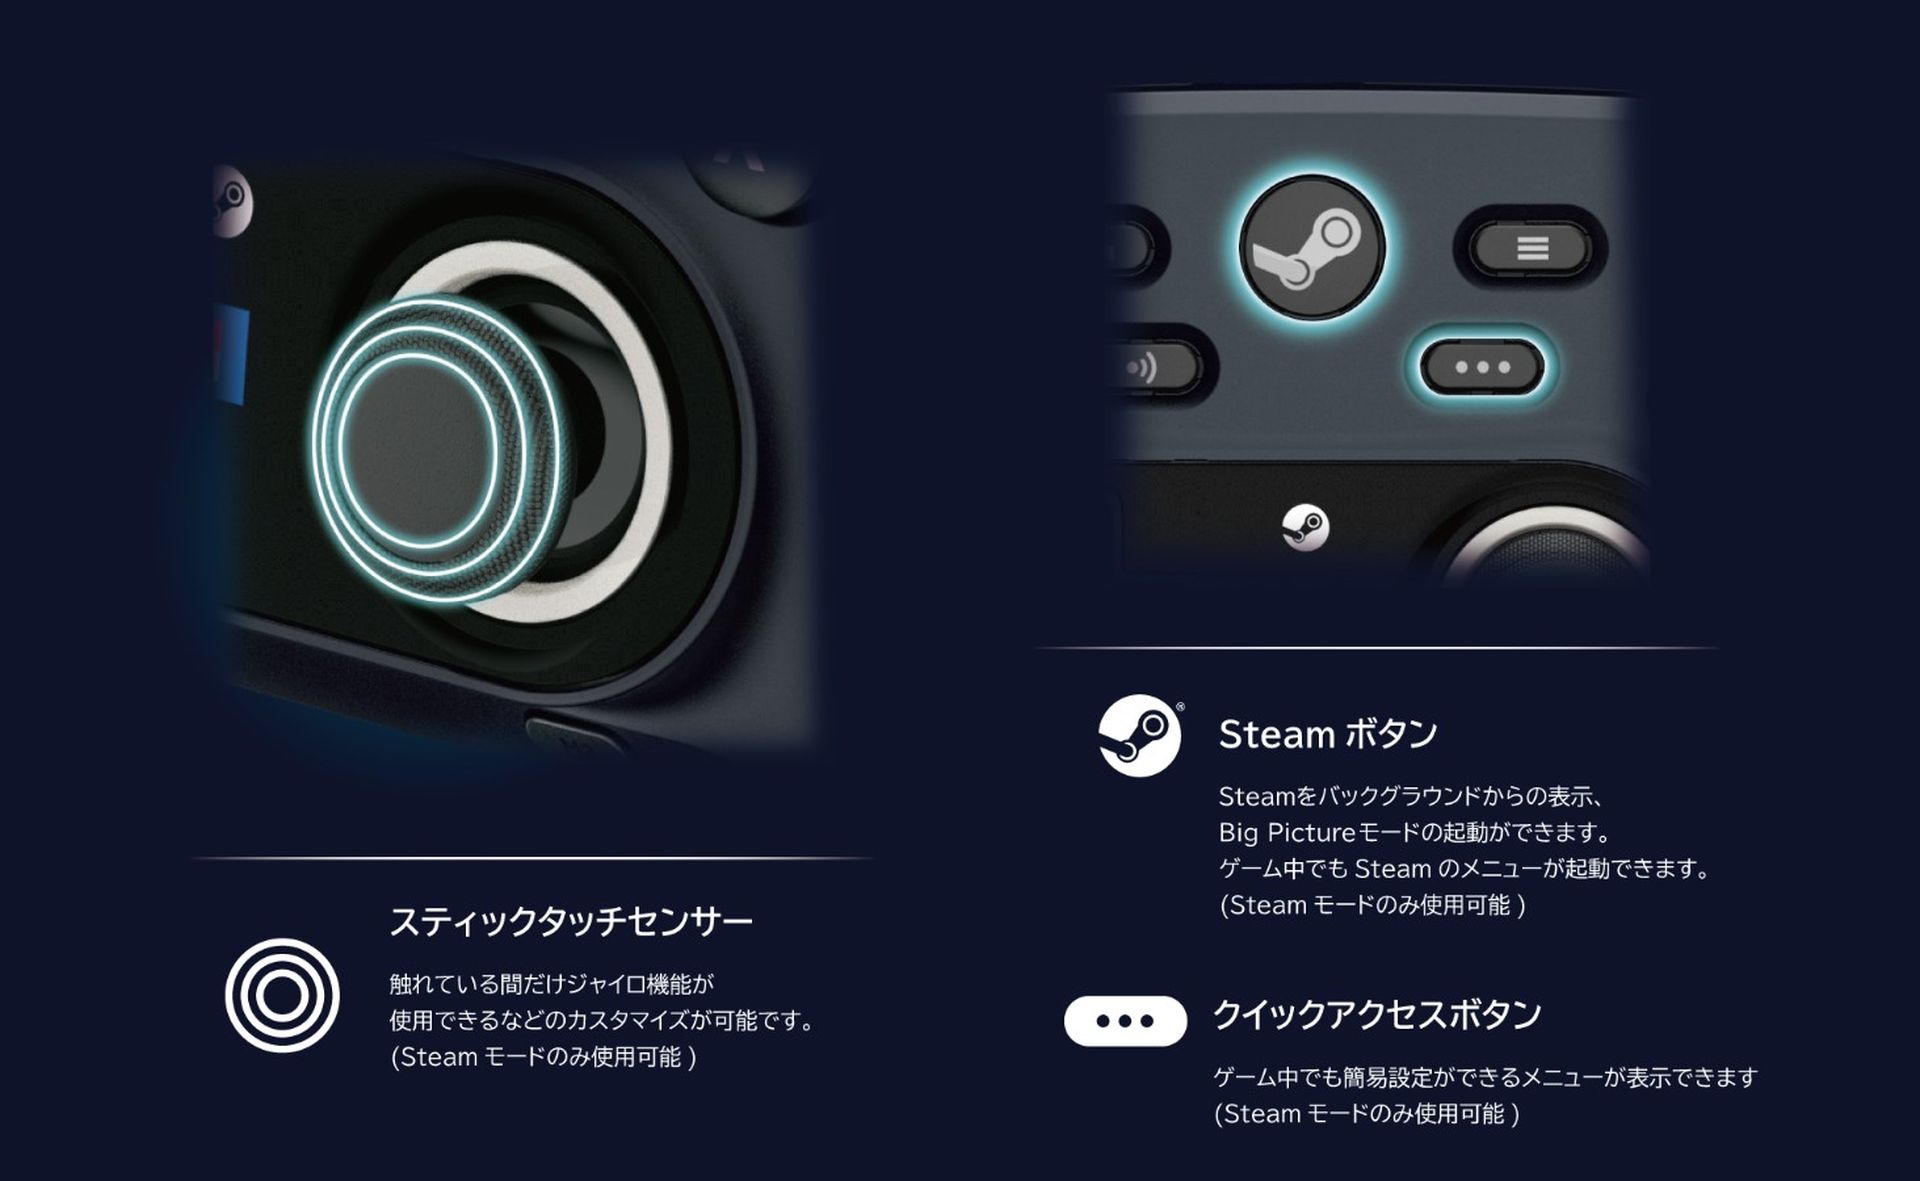 Hori Steam Controller onthuld: hier zijn kenmerken, prijs en releasedatum